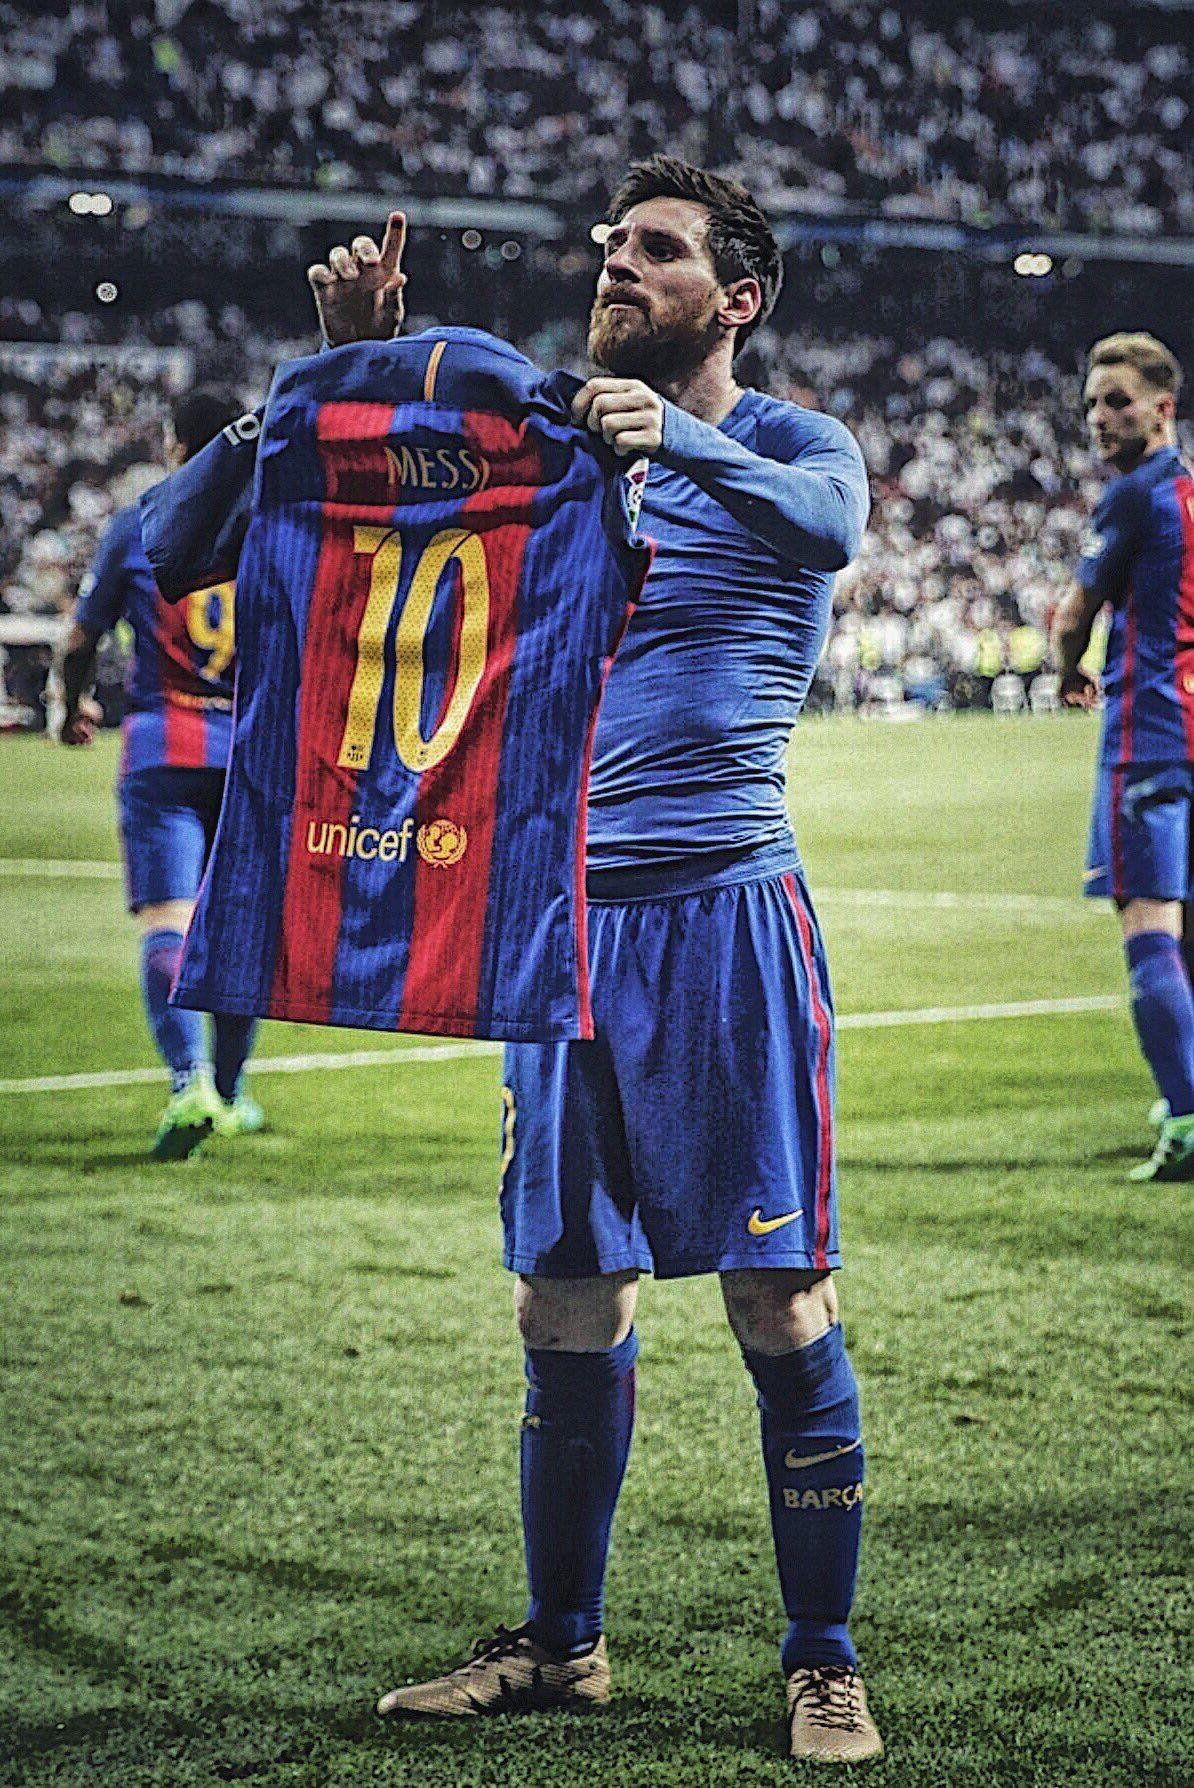 Messi vs Real Madrid Wallpapers sẽ mang đến cho bạn những hình ảnh nghệ thuật đầy sắc màu về cuộc đua tài năng giữa Lionel Messi và Real Madrid. Hãy xem để ngắm nhìn những bức ảnh đẹp và lưu giữ những kỷ niệm tuyệt vời của bóng đá.